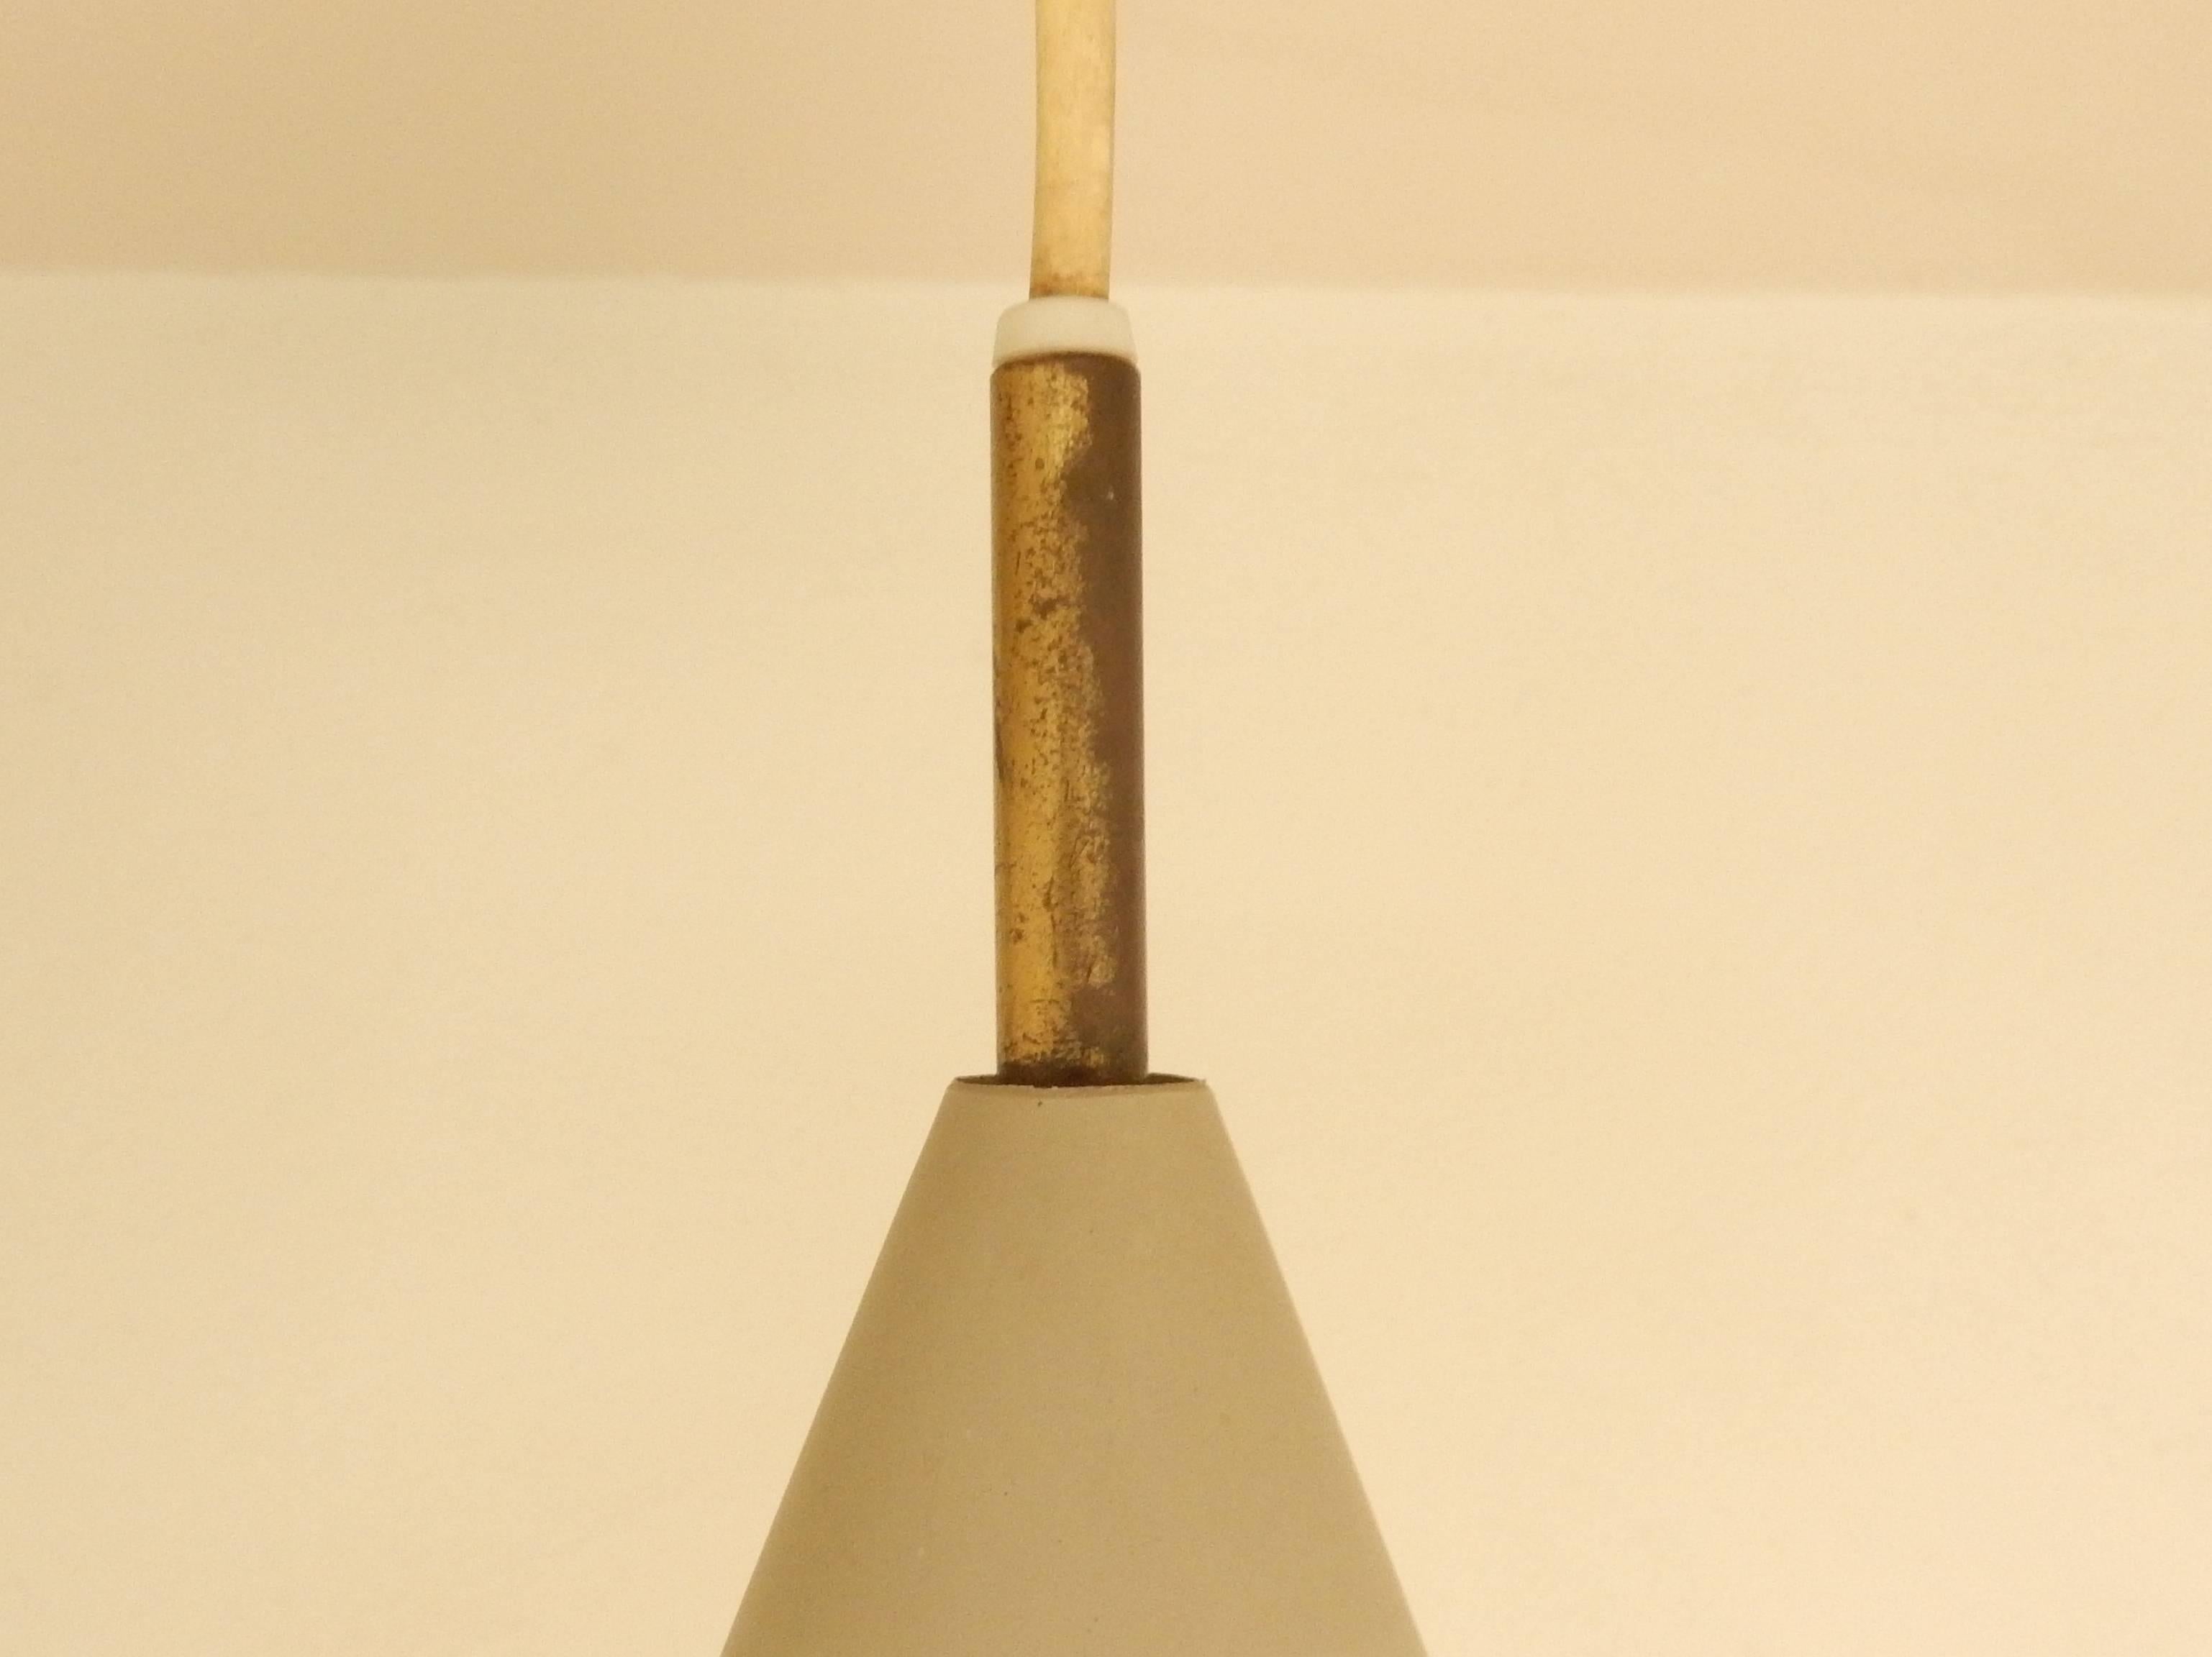 Diese hübsche kleine Pendelleuchte ist ein Entwurf von Svend Aage Holm Sørensen für Lyfa aus den 1950er Jahren. Es sind nur wenige Modelle mit diesen beiden Kegeln bekannt. Normalerweise tragen die Zapfen separat eine Glühbirne. Bei diesem Modell